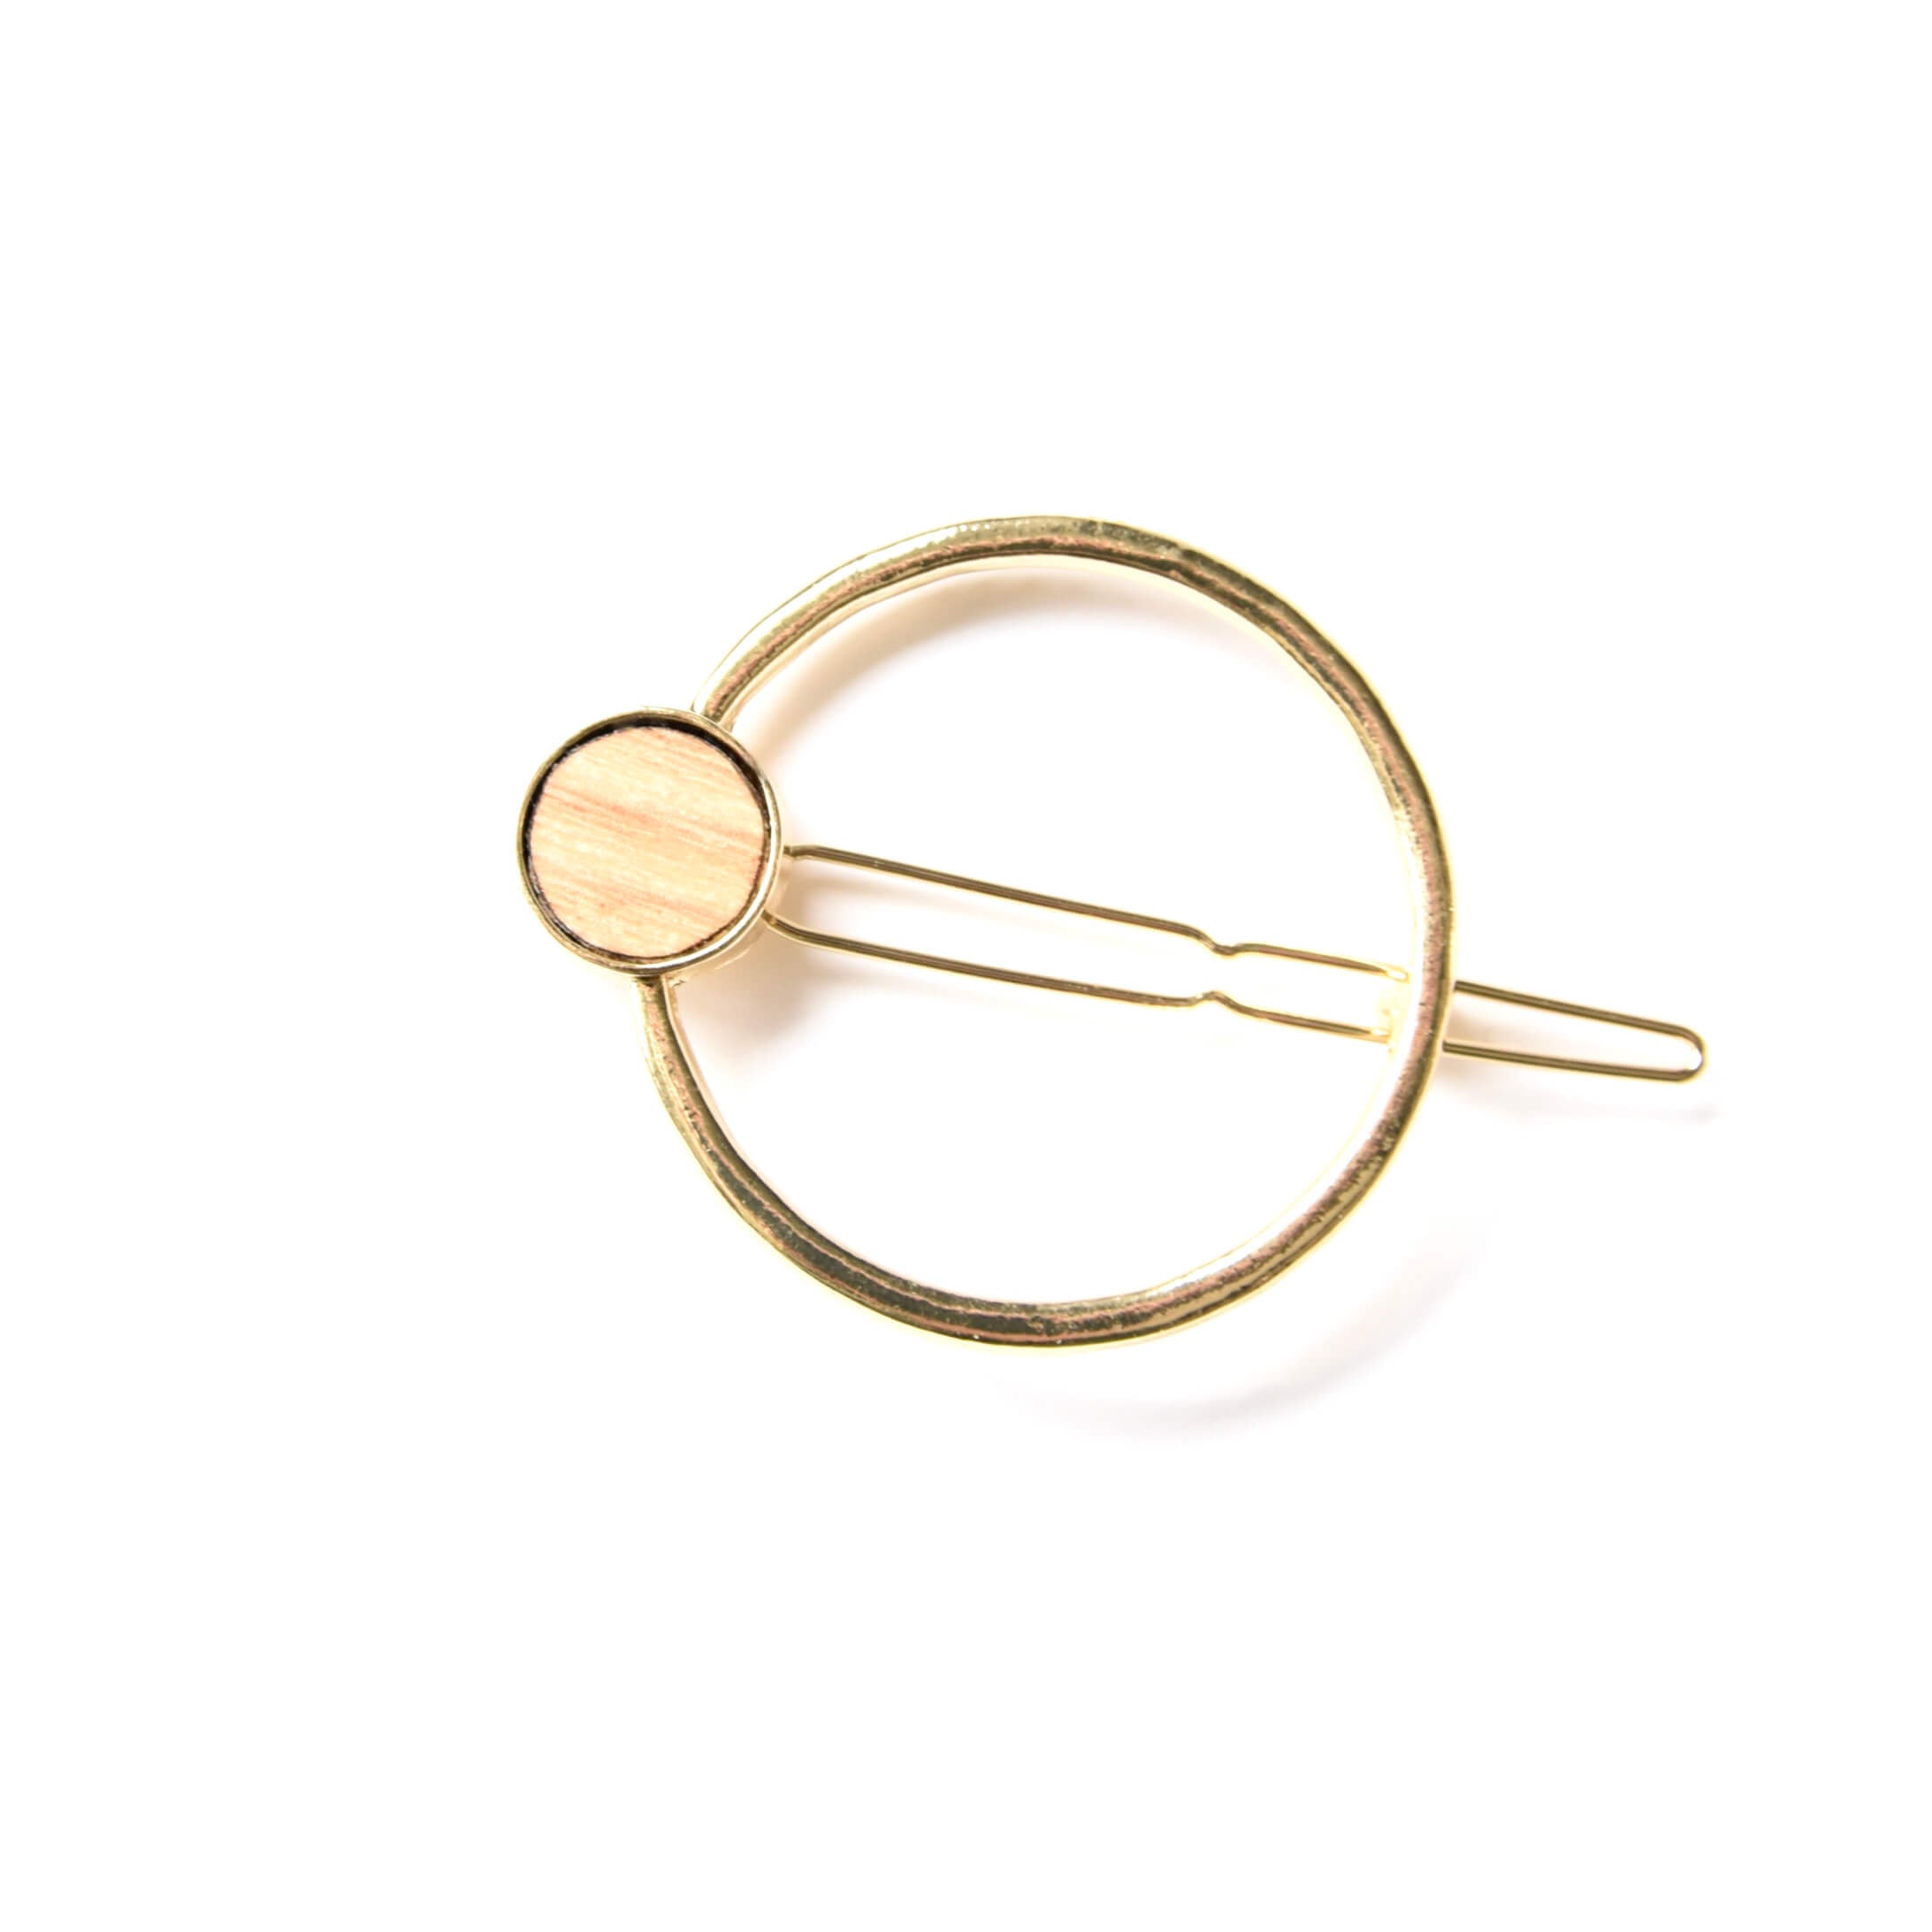 Barrette minimalist dorée - clip simple à cheveux en laiton - accessoire pour cheveux or